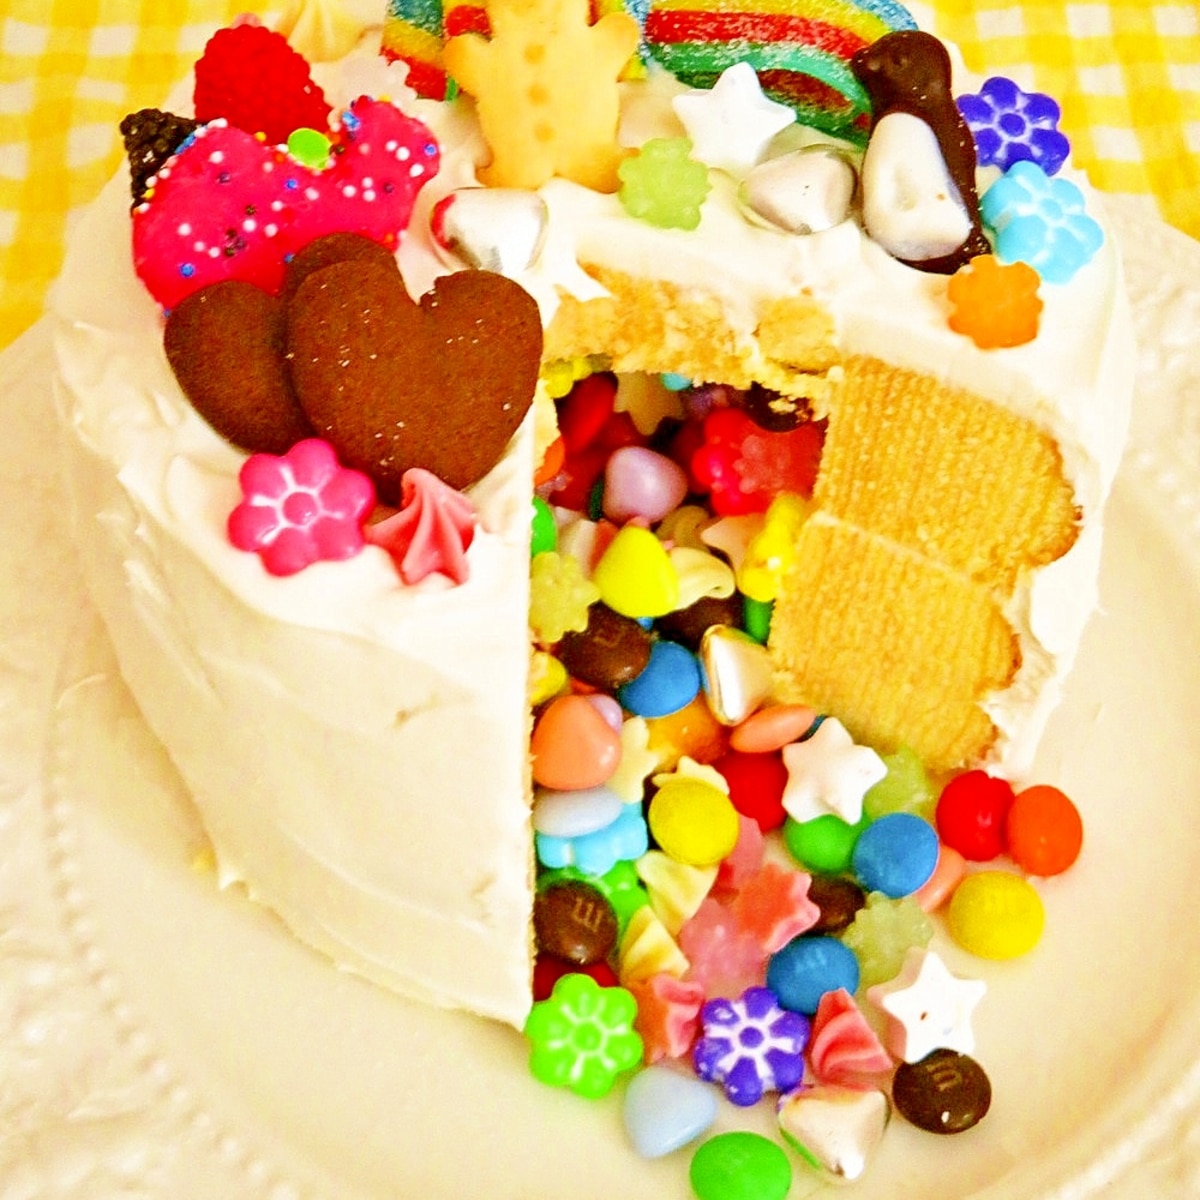 パーティーに 簡単 楽しいサプライズケーキ レシピ 作り方 By Hirokoh ひろこぉ 楽天レシピ